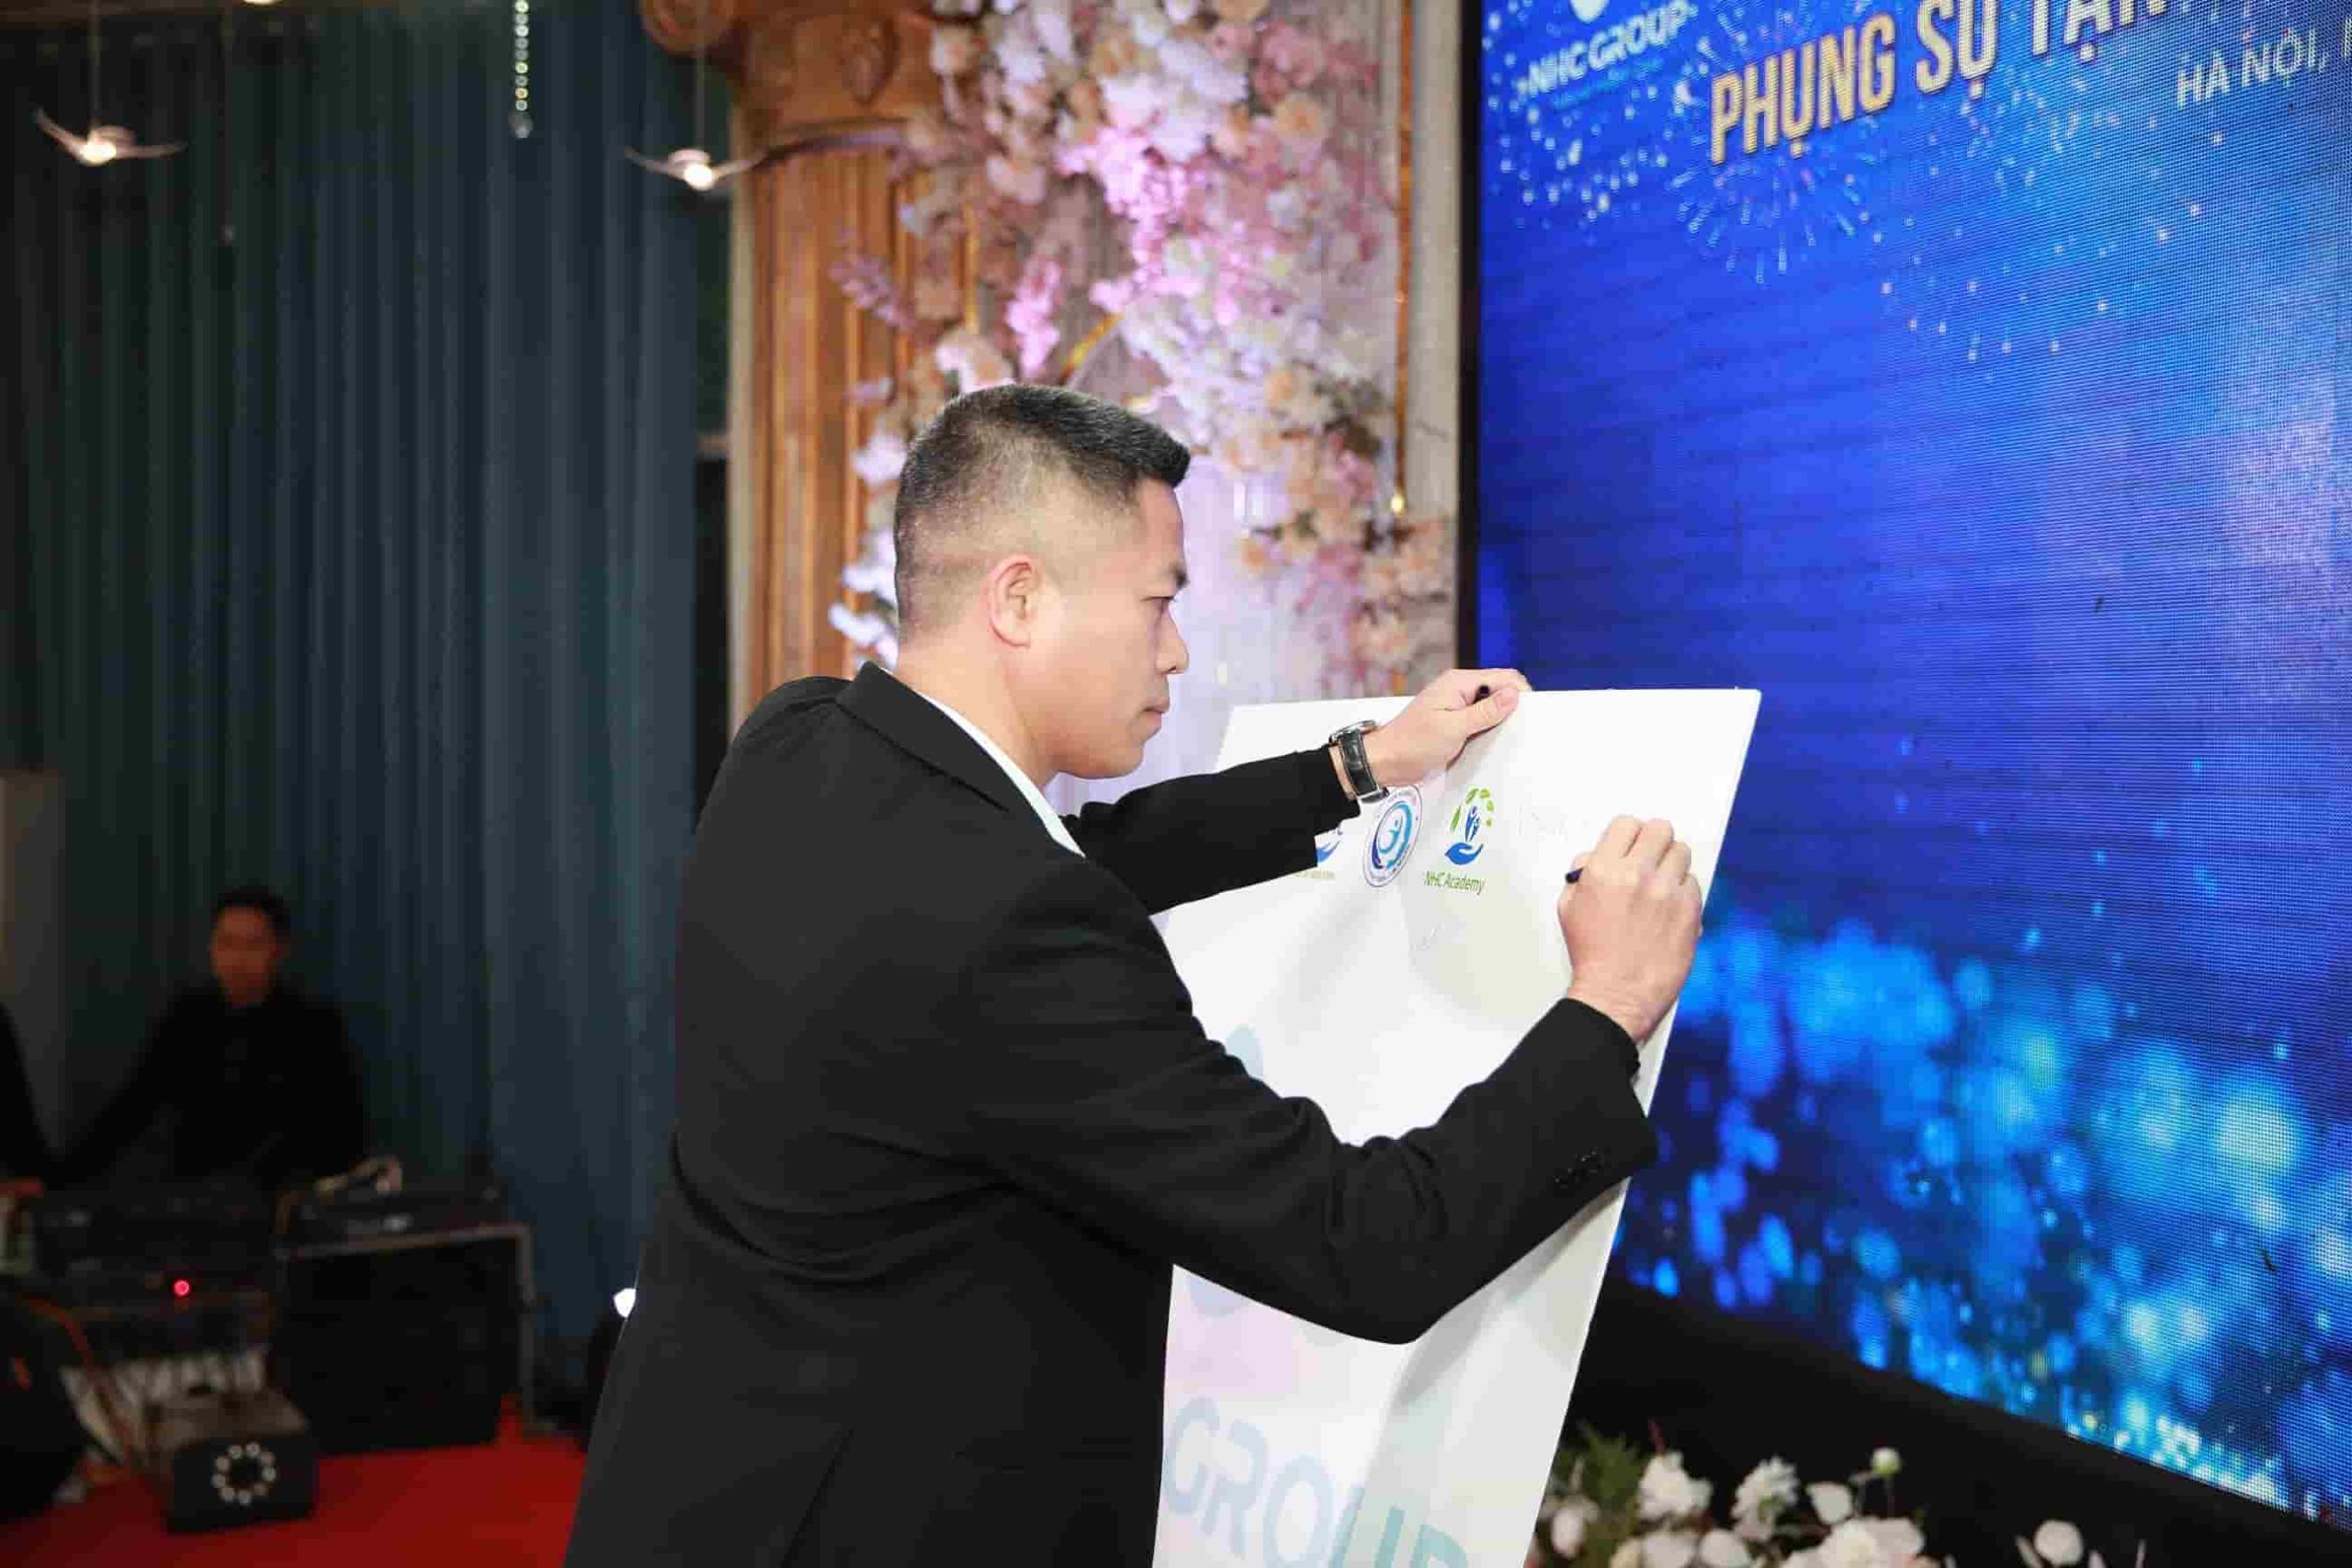 Anh Nguyễn Quang Hưng - Chủ tịch NHC Group gửi những lời chúc tốt đẹp nhất đến NHC Academy nói riêng và NHC Group nói chung.